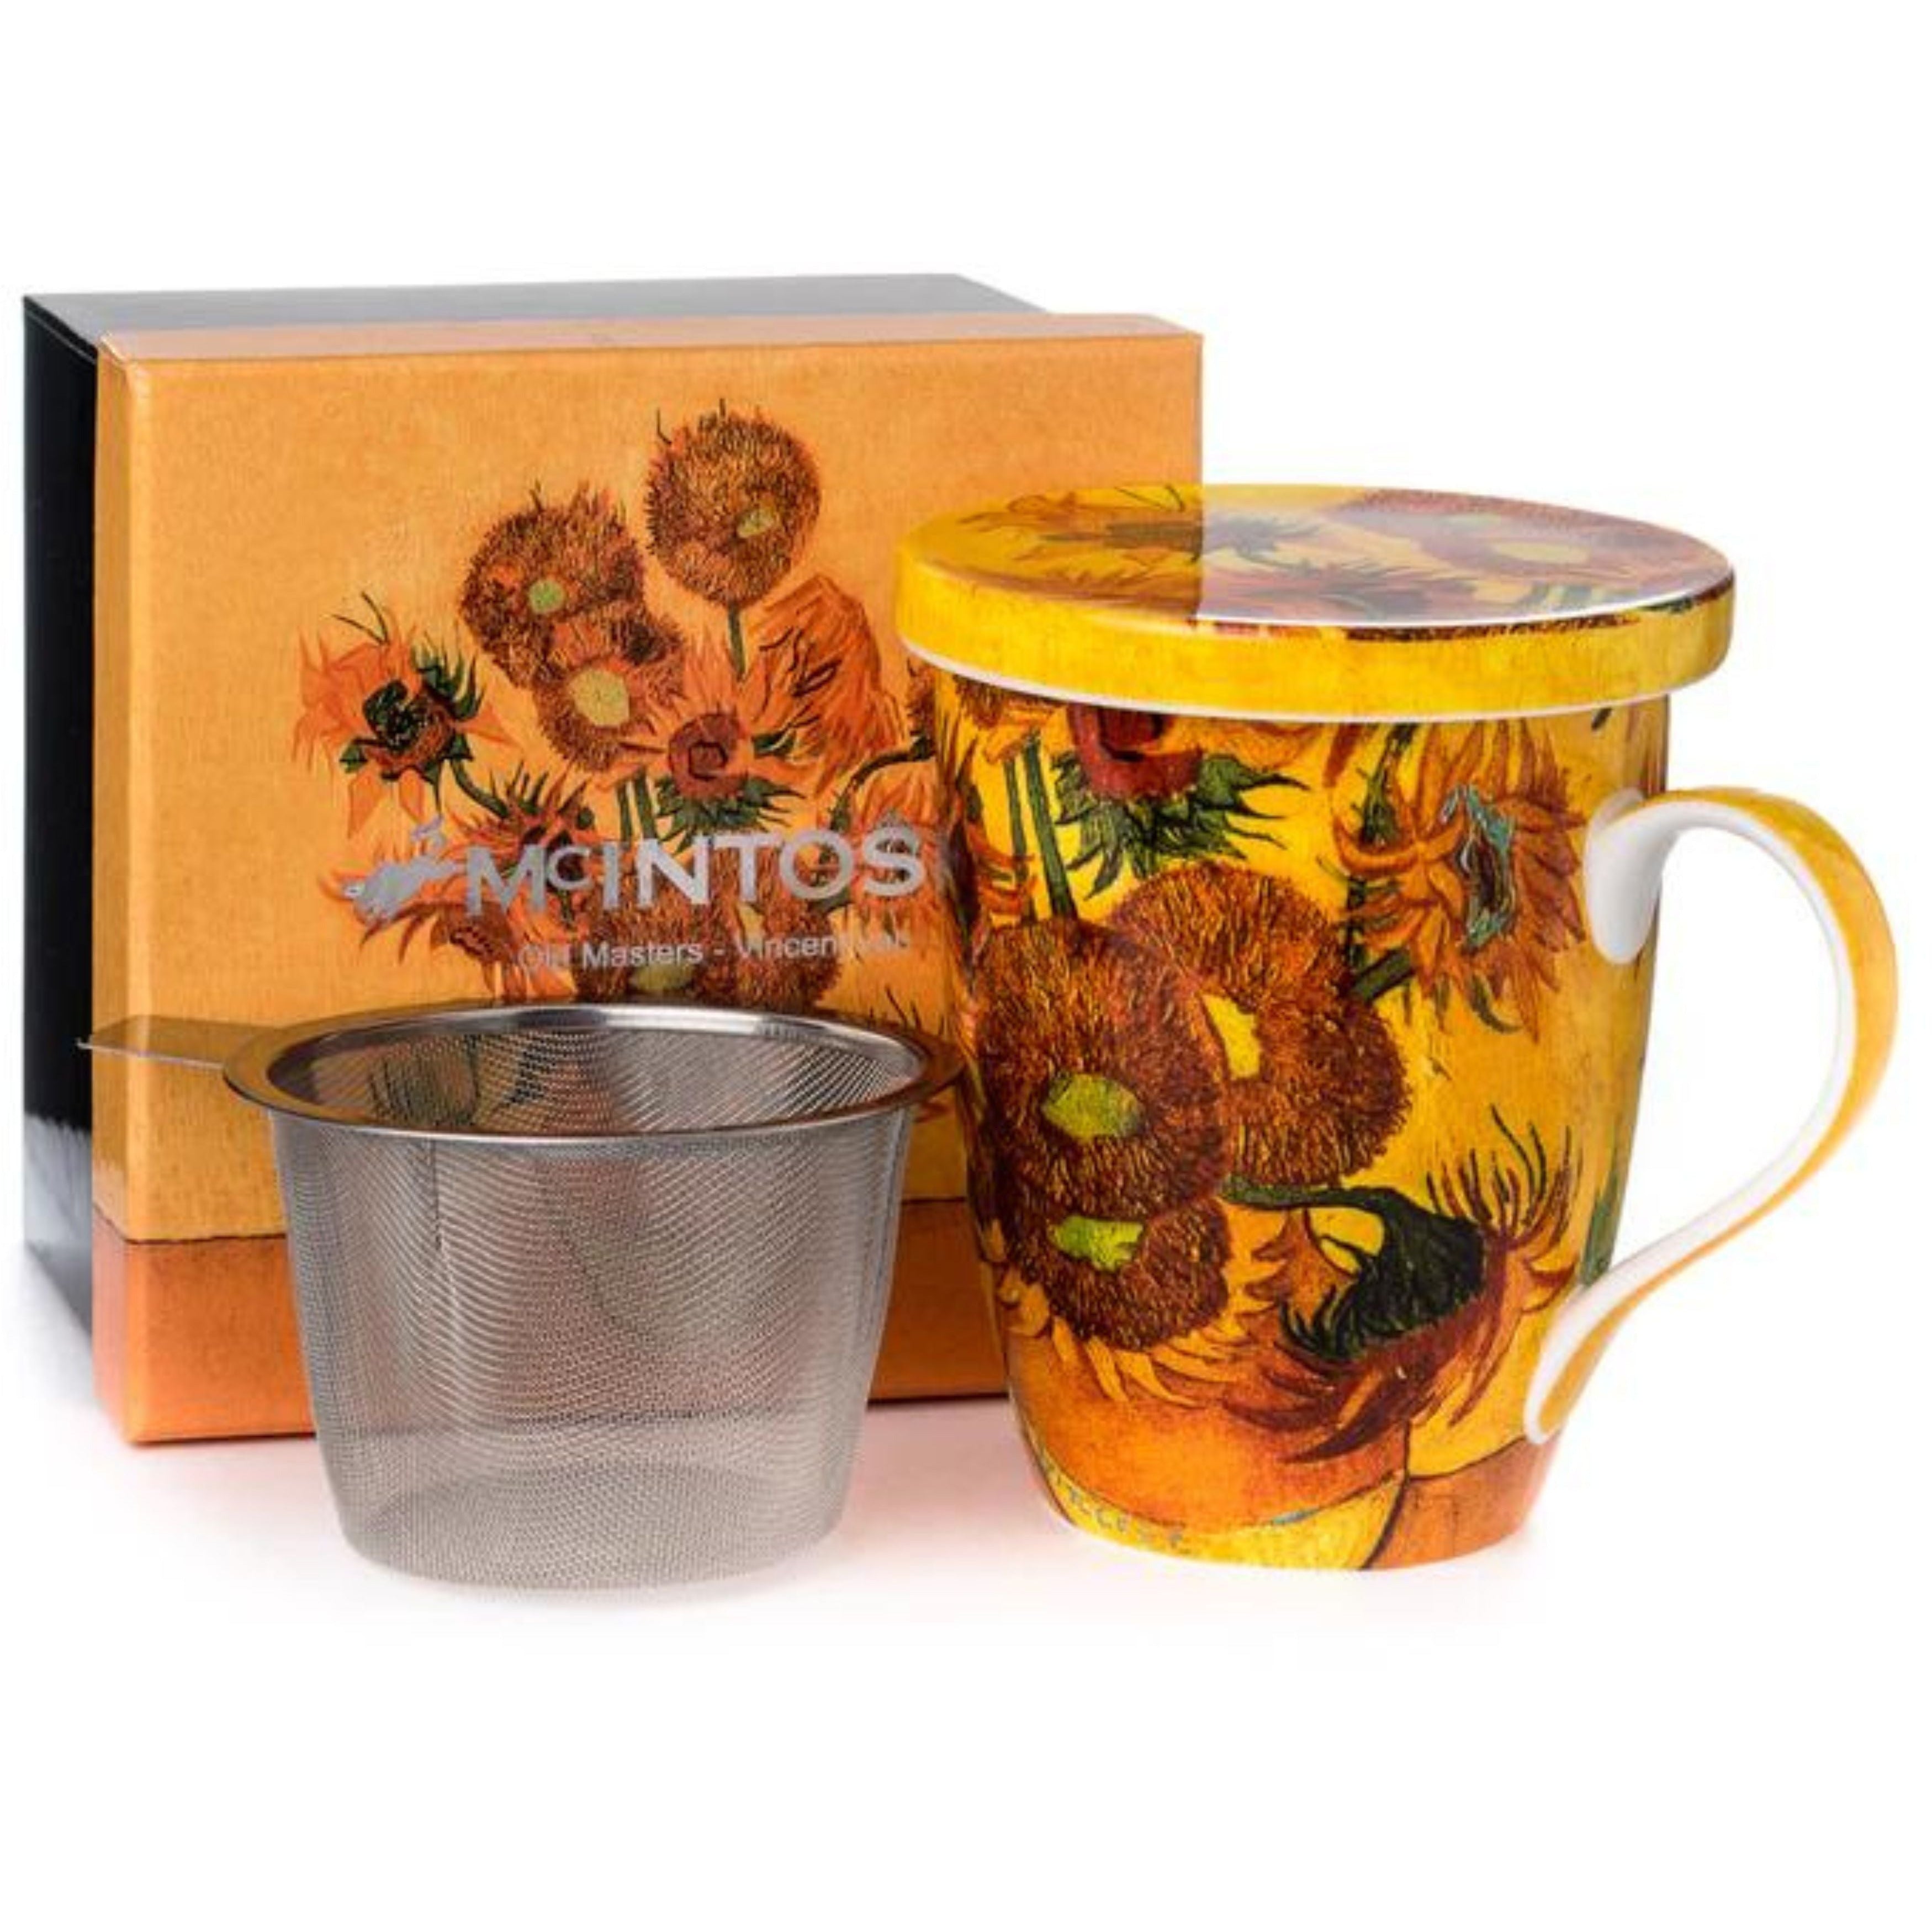 Van Gogh "Sunflowers" Infuser, Mug & Lid